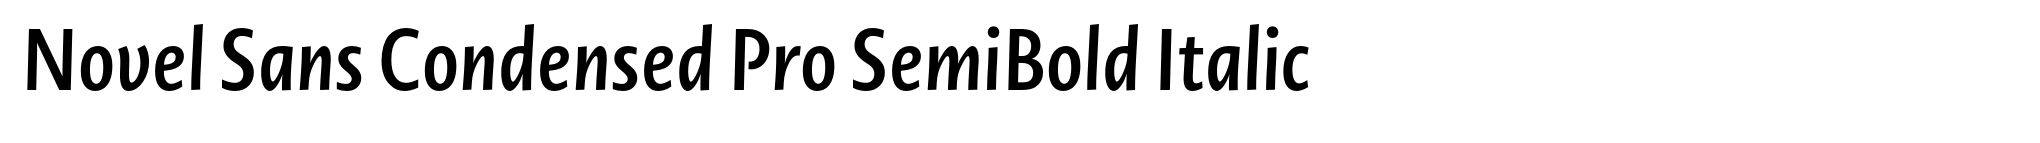 Novel Sans Condensed Pro SemiBold Italic image